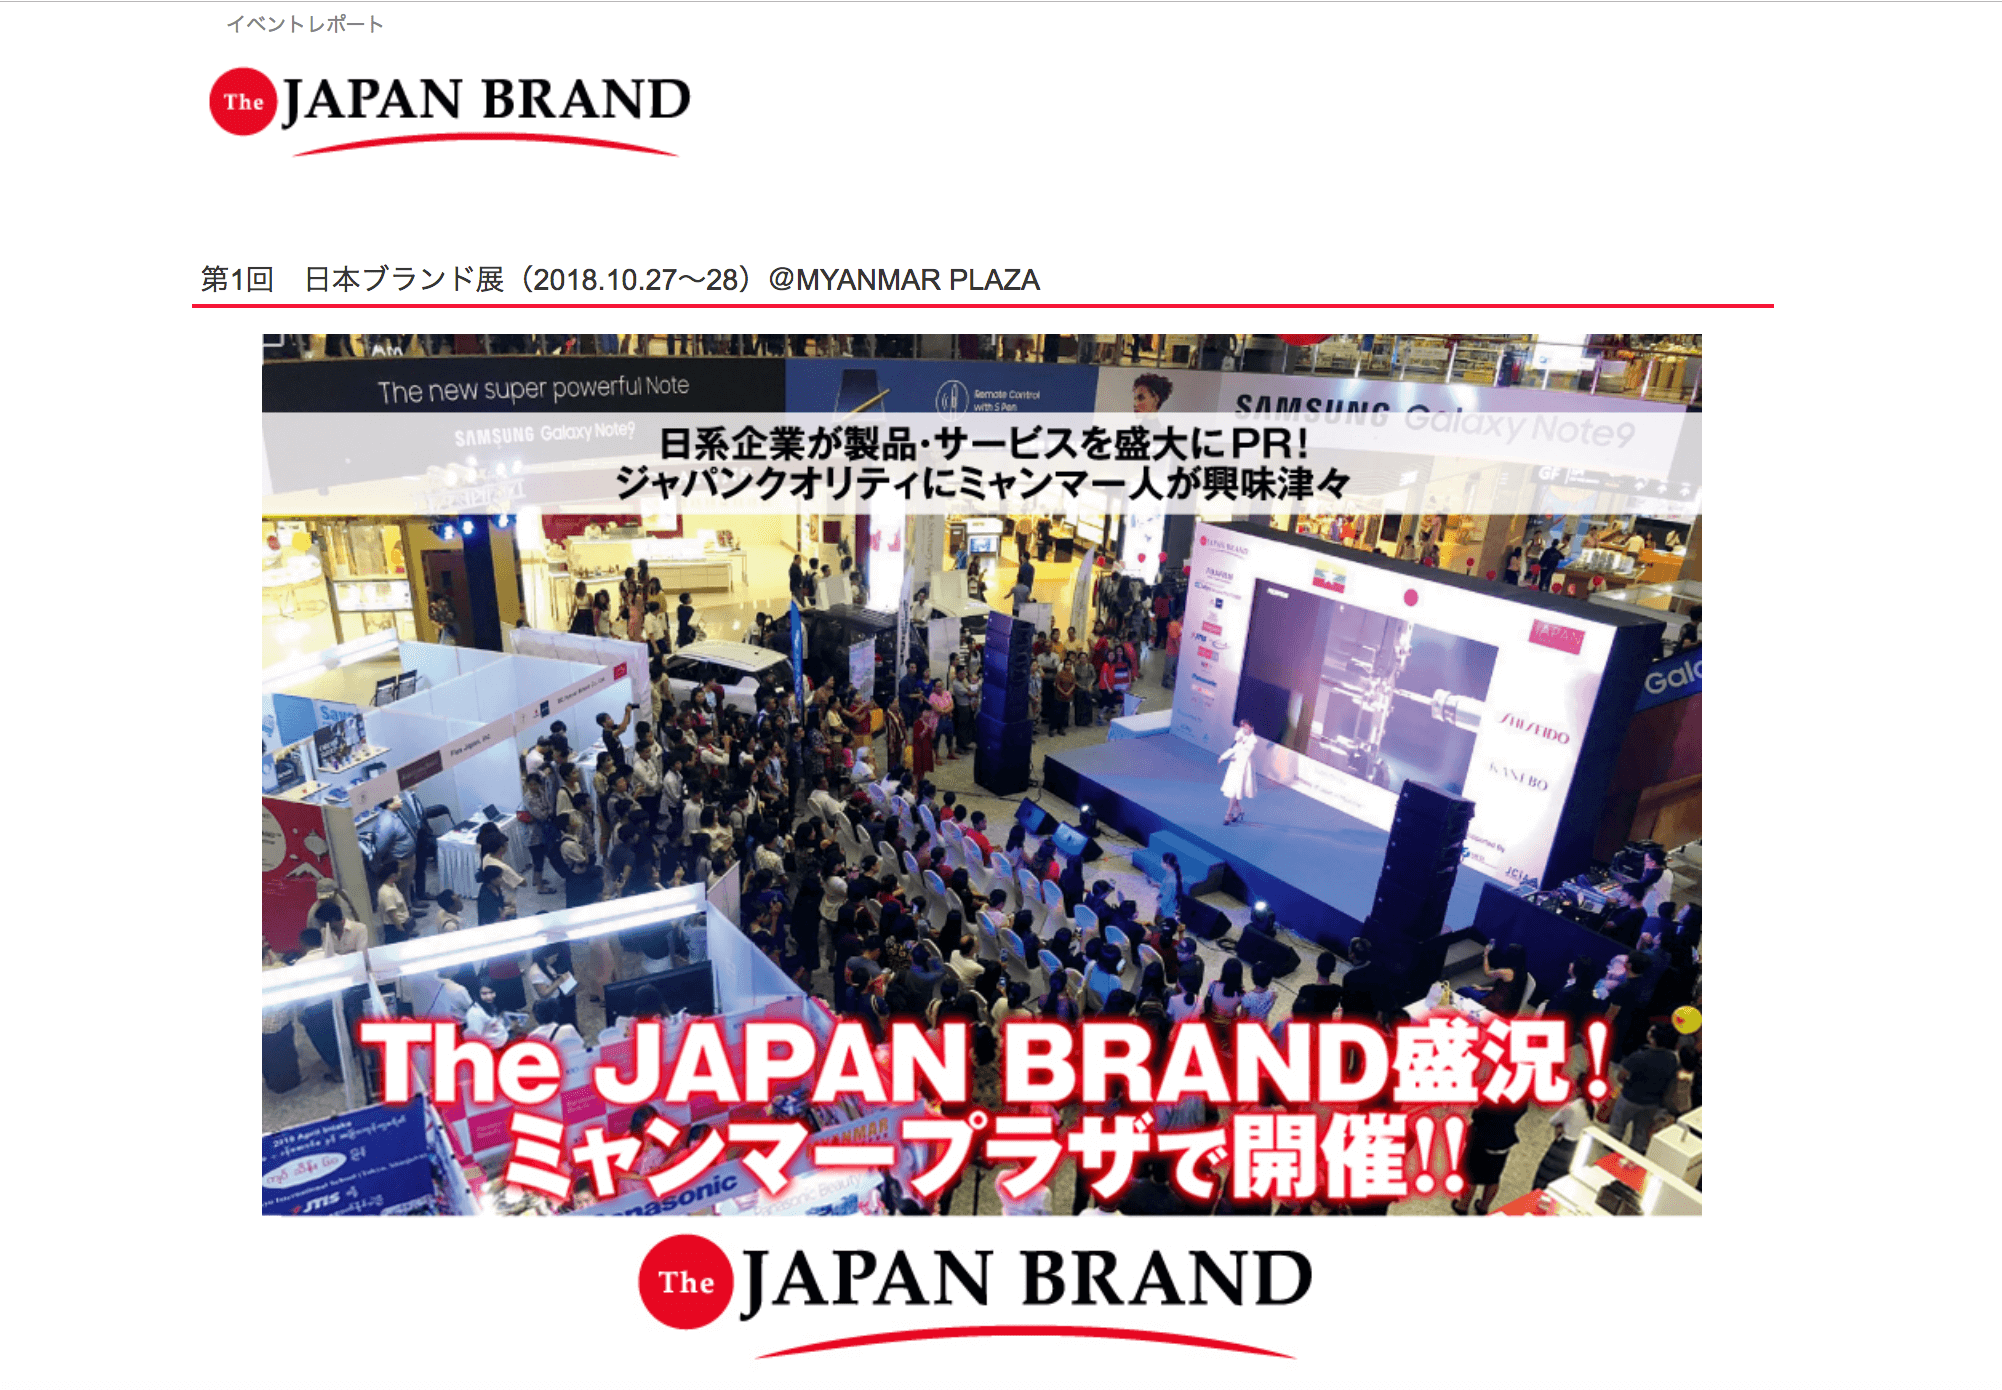 日本の製品・サービスをミャンマー人に広くPR、「The JAPAN BRAND™」が盛況